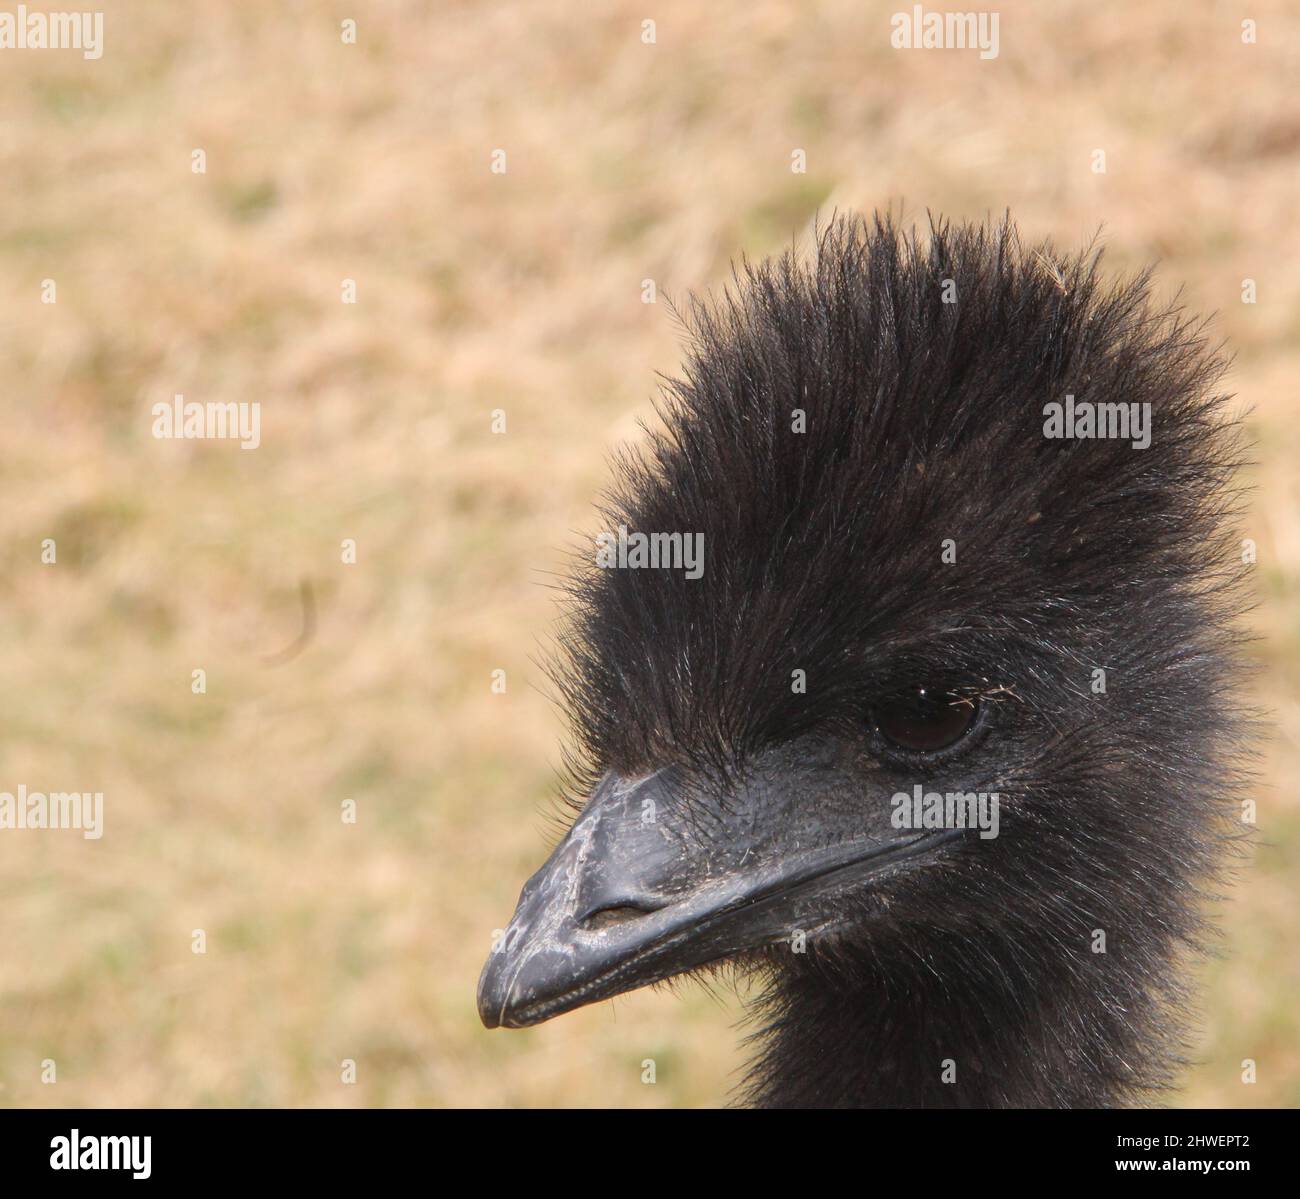 Juvenile emu/ostrich Stock Photo